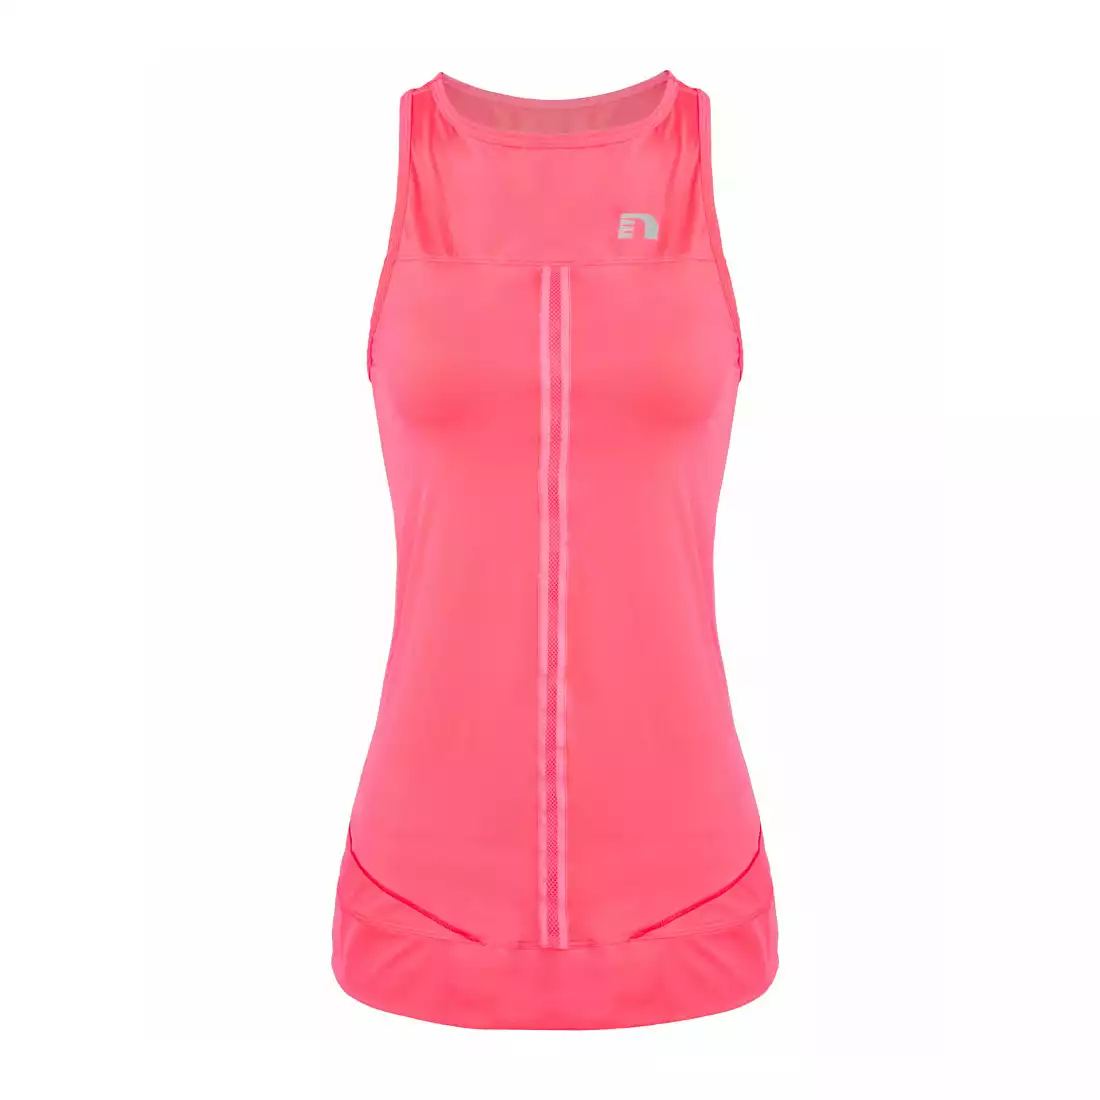 NEWLINE IMOTION TANK 10793-274 - damska koszulka do biegania b/r, kolor: różowy fluor